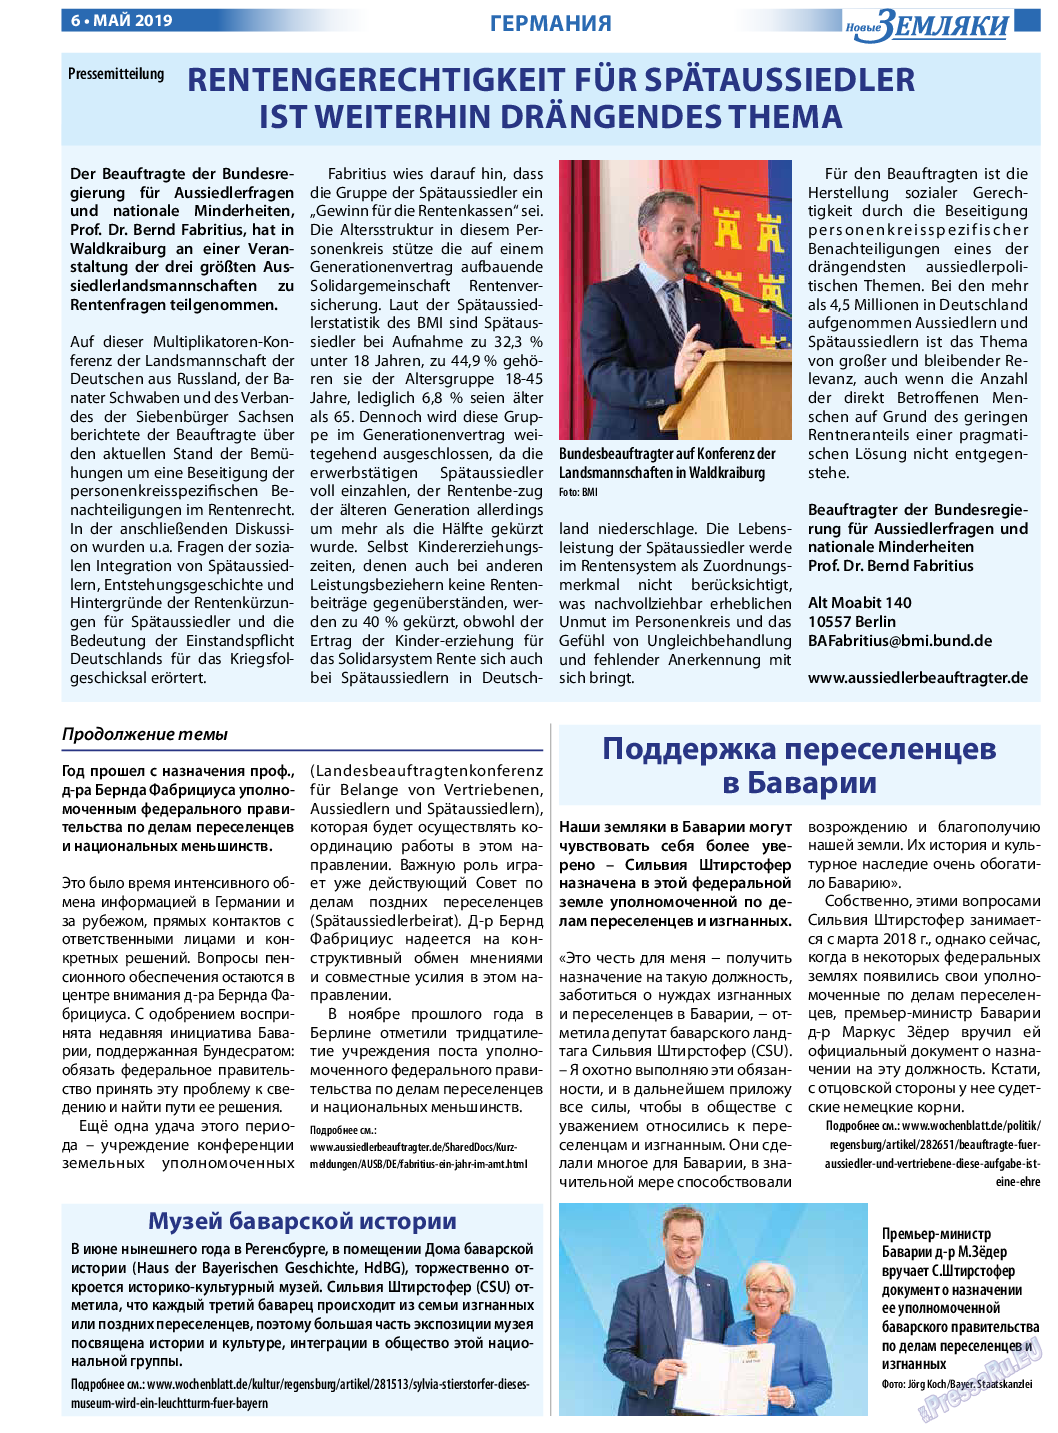 Новые Земляки, газета. 2019 №5 стр.6